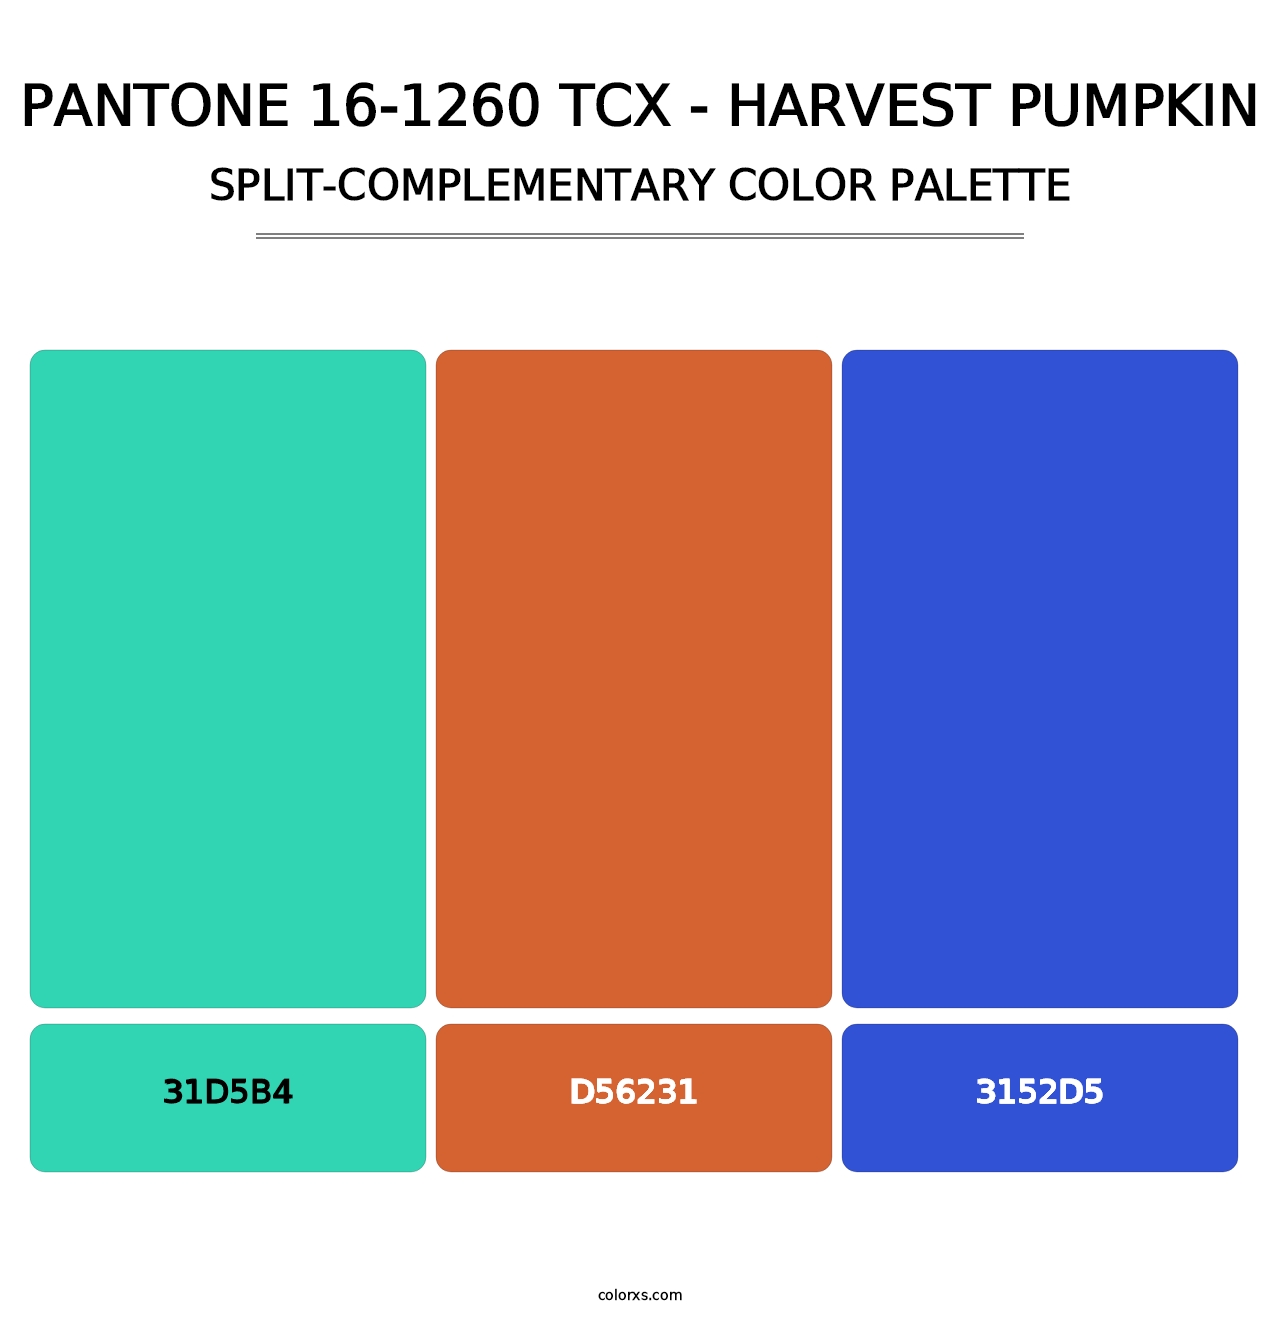 PANTONE 16-1260 TCX - Harvest Pumpkin - Split-Complementary Color Palette